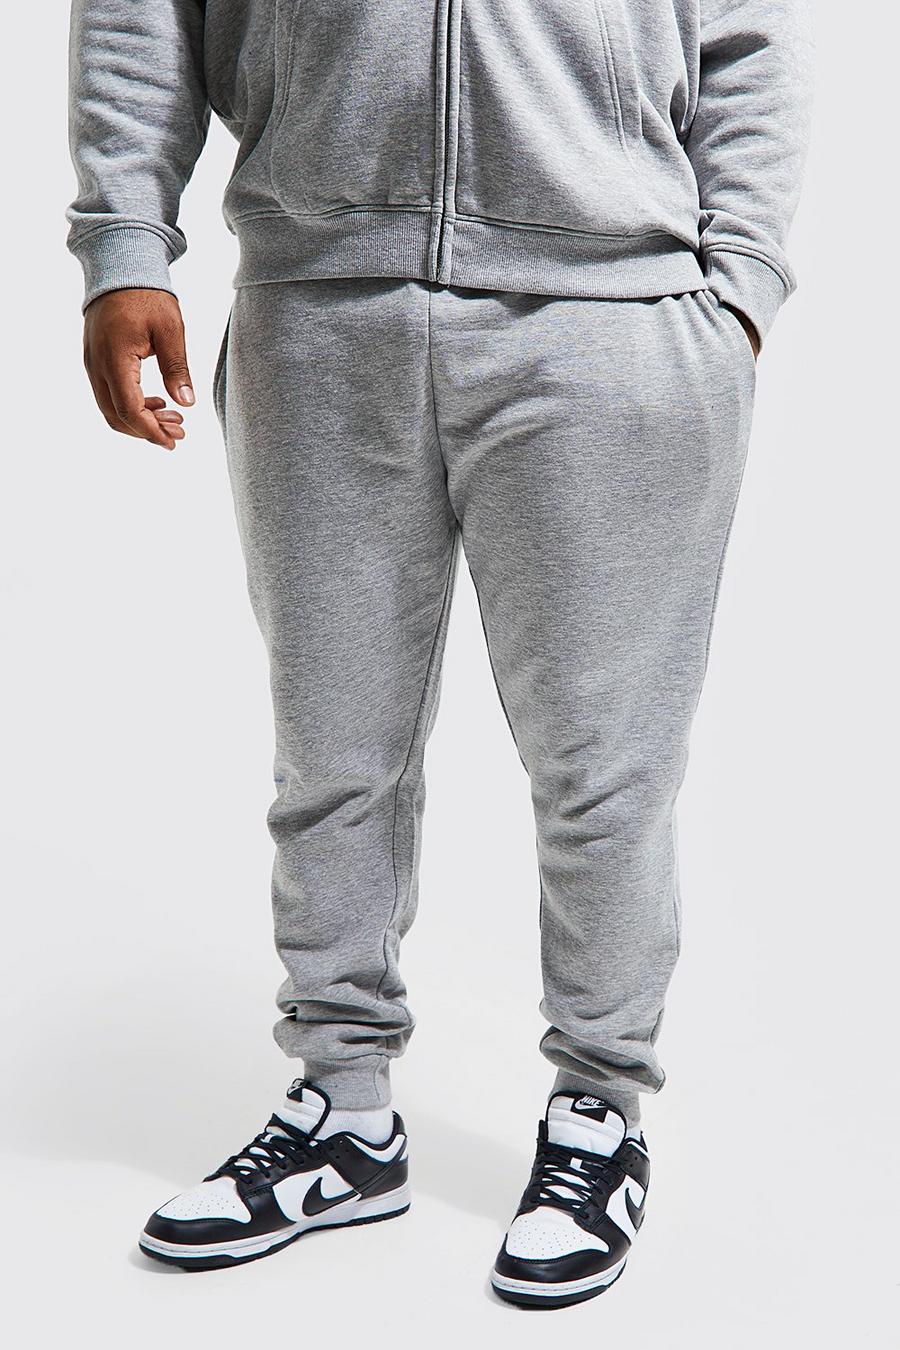 Pantalón deportivo Plus pitillo básico con algodón ecológico, Grey marl grigio image number 1